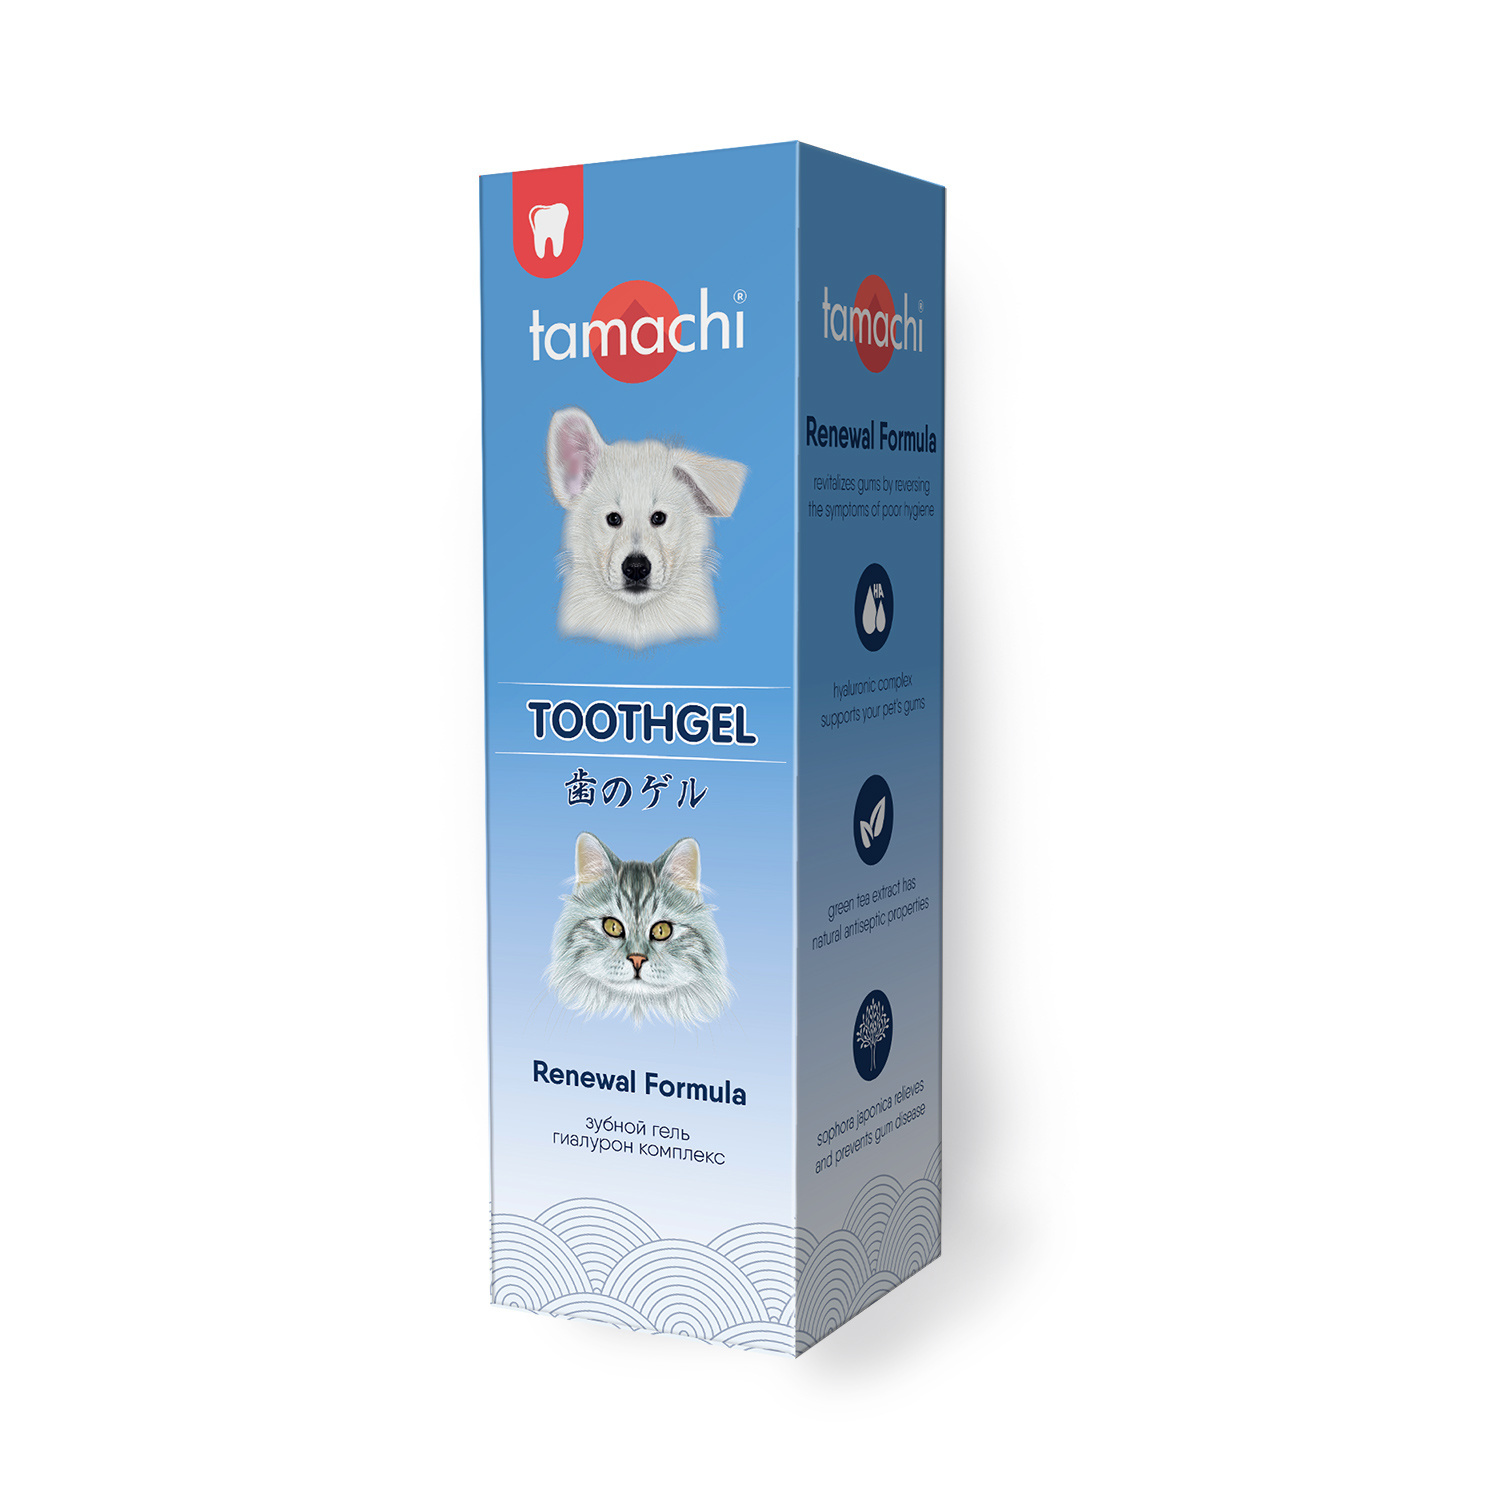 Tamachi Tamachi зубной гель (100 мл) зубной гель tamachi тамачи для удаления налёта с поверхности зубов 100 мл